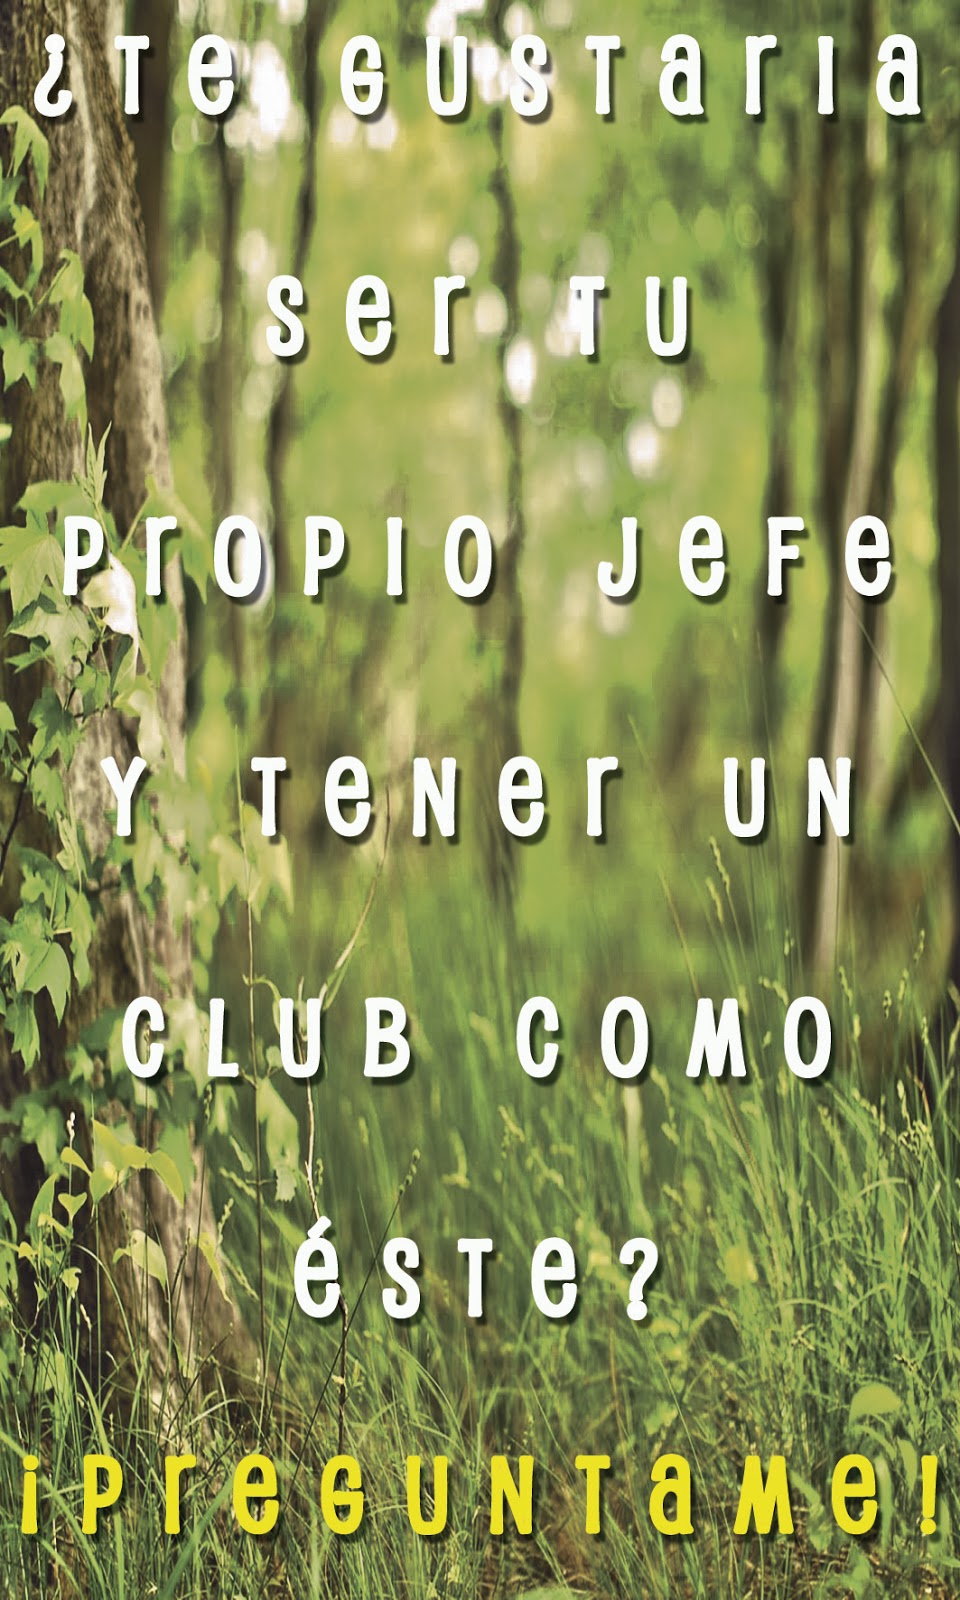 Club Saludable Los Ejidos | Ejido Madera 1130, Terrenos Nacionales, 32598 Cd Juárez, Chih., Mexico | Phone: 656 604 2227